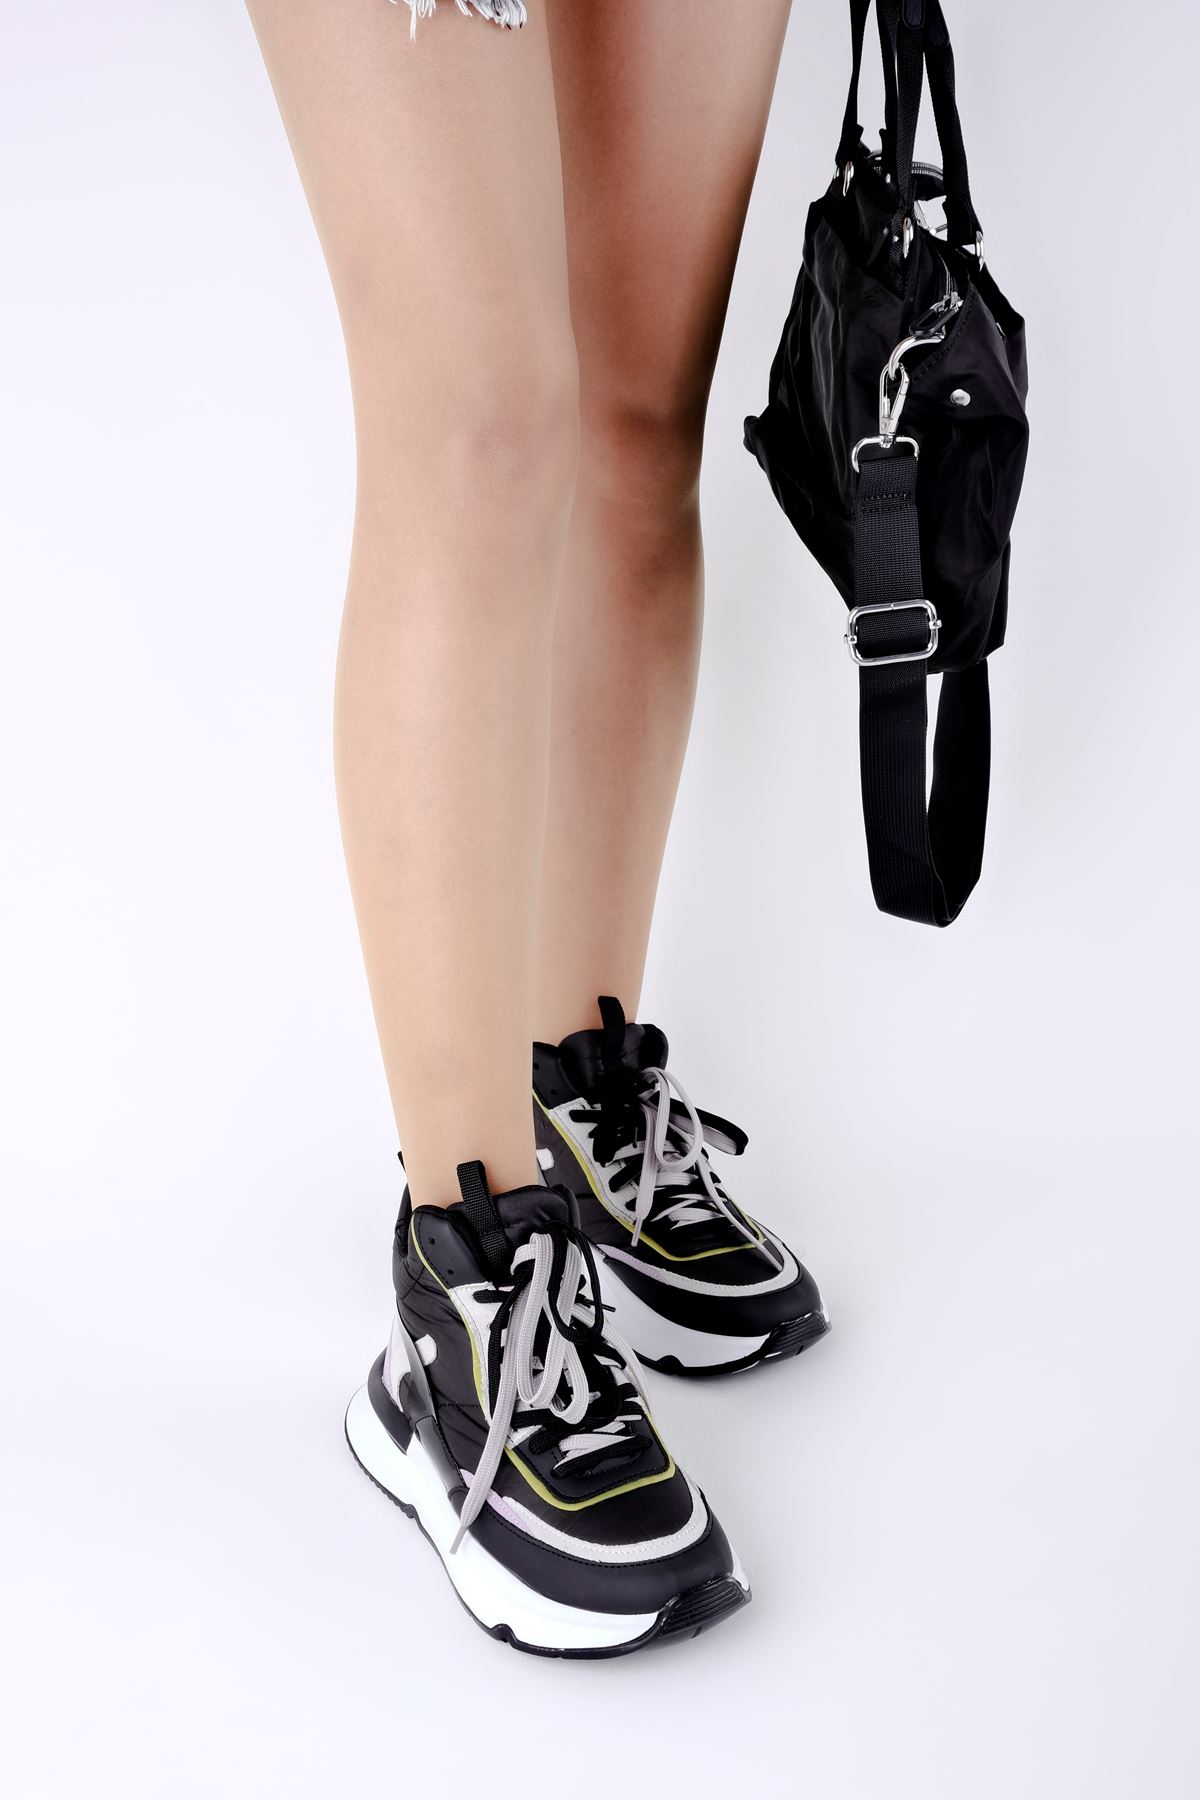 Freya Kadın Bilek Boy Bağcıklı Spor Ayakkabı-siyah